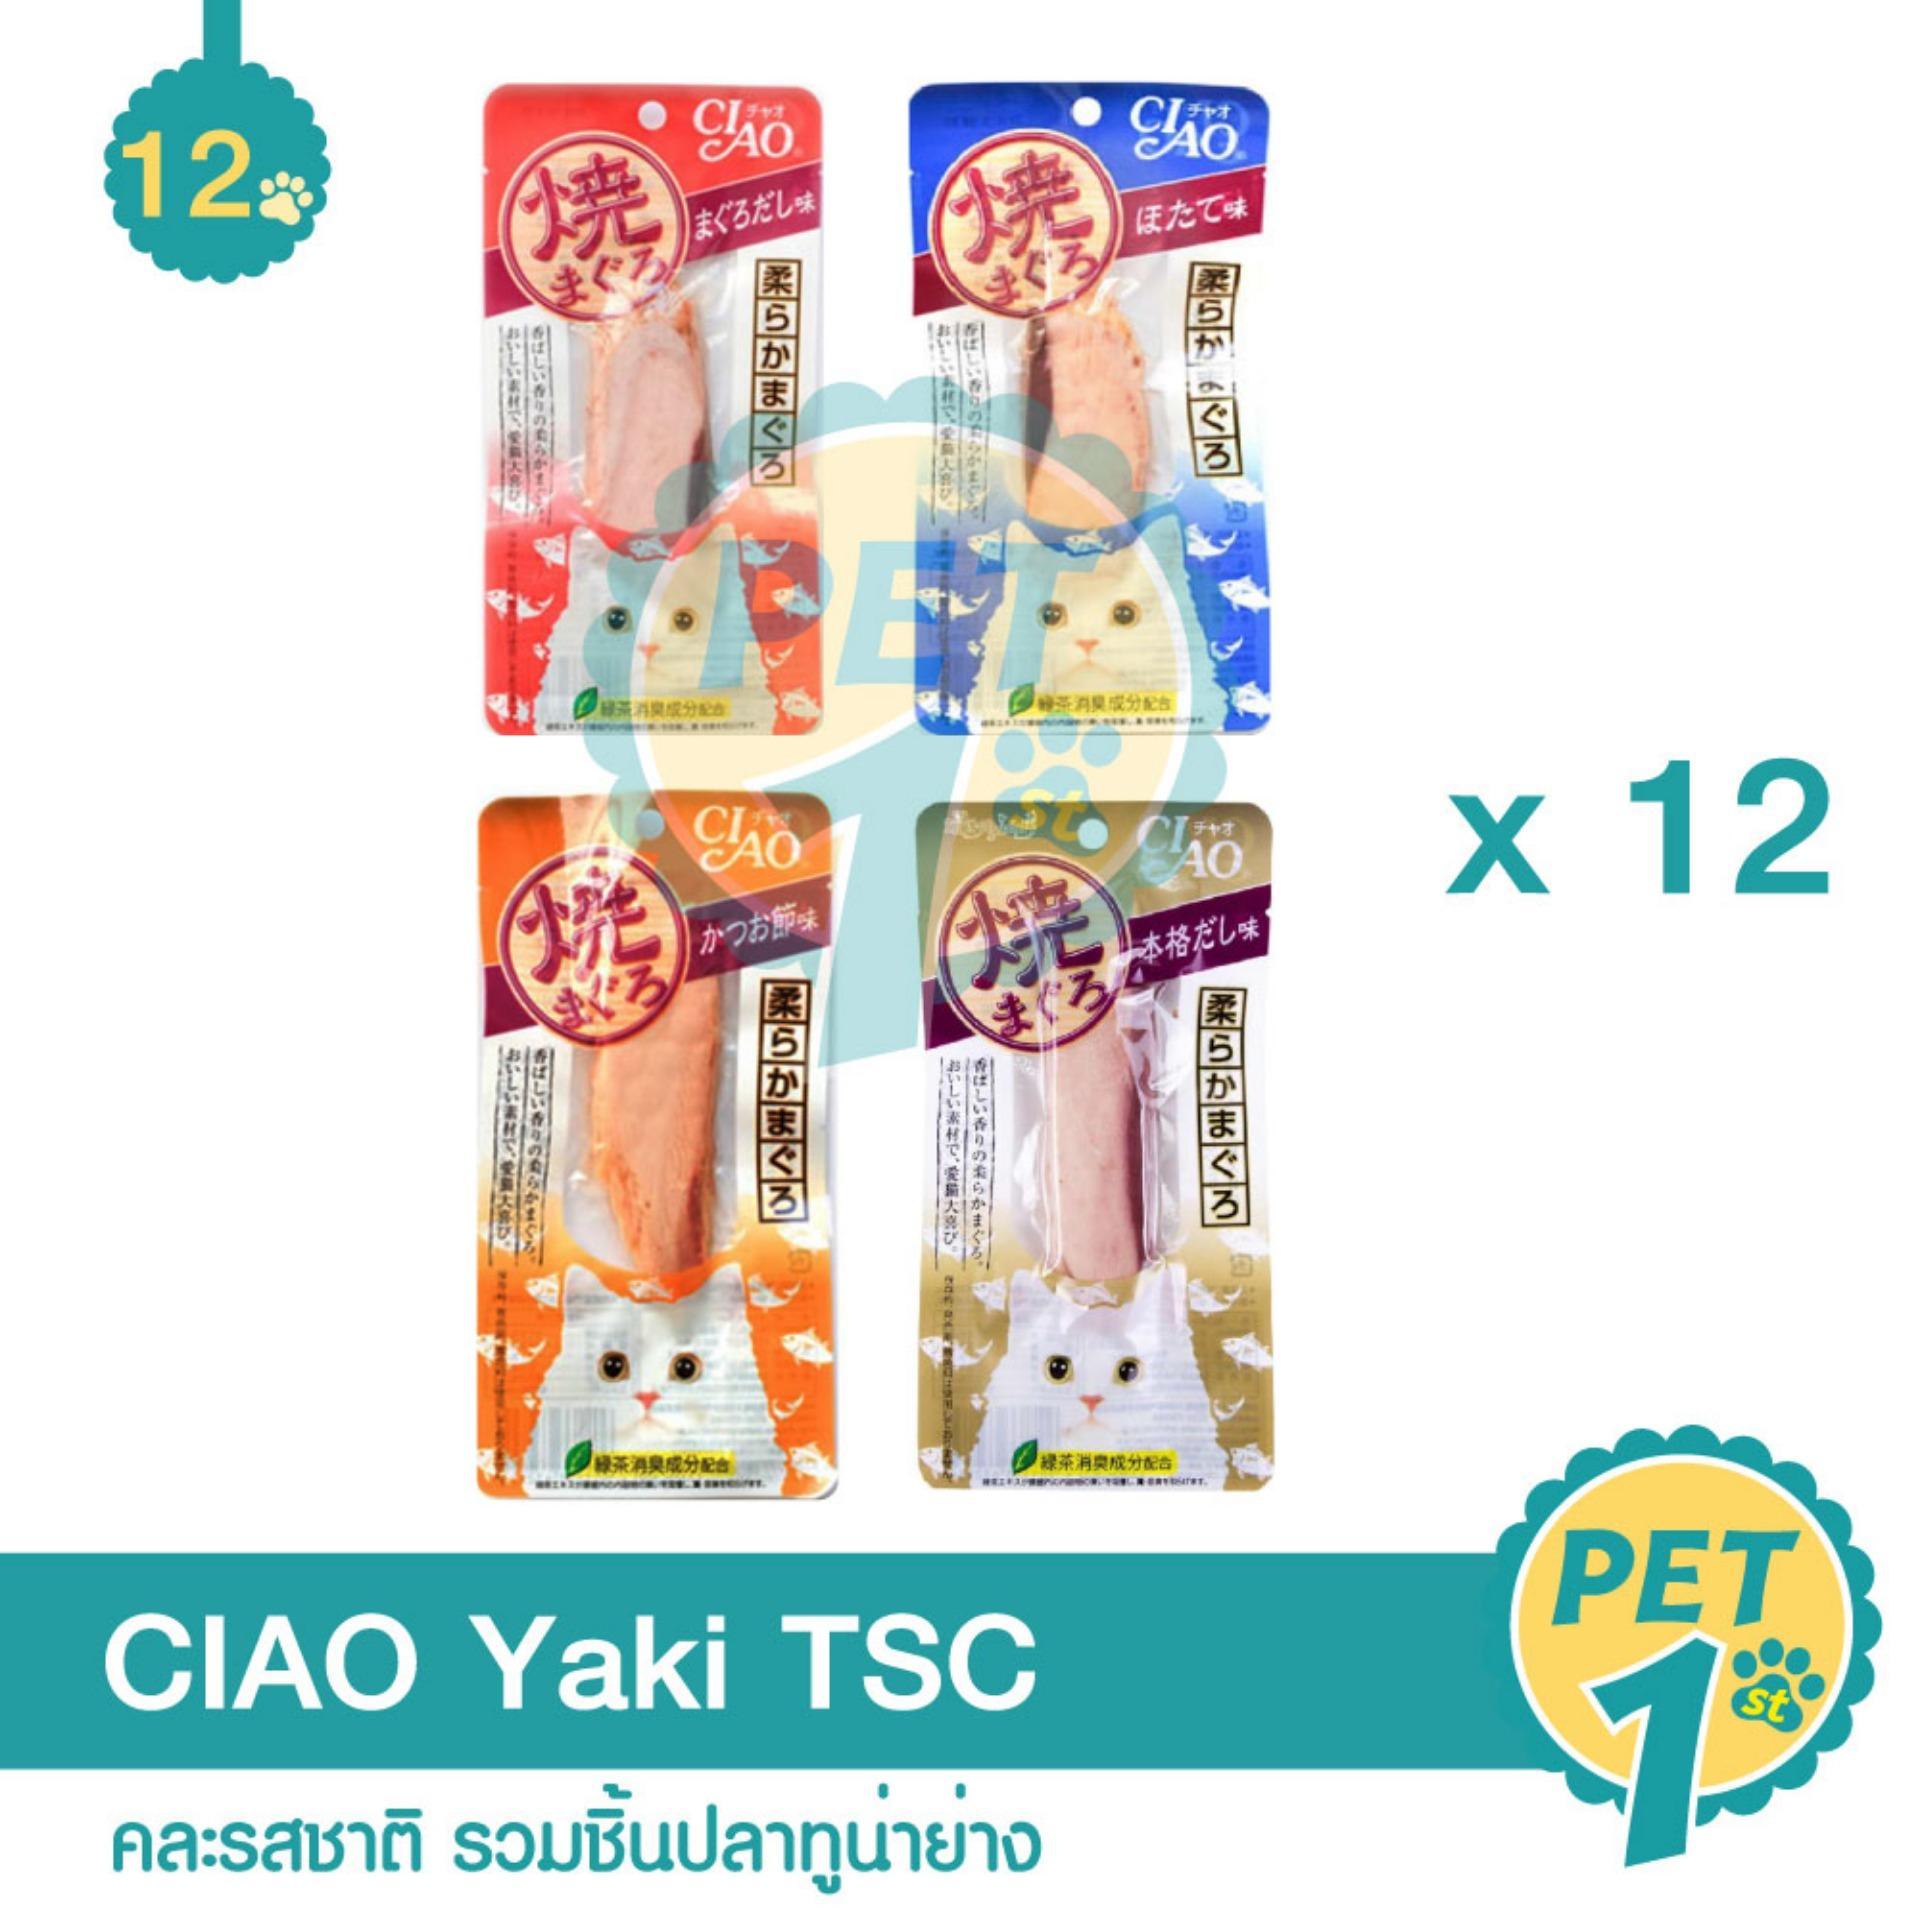 CIAO Yaki ขนมแมว คละรสชาติ รวมชิ้นปลาทูน่าย่าง - 12 ชิ้น